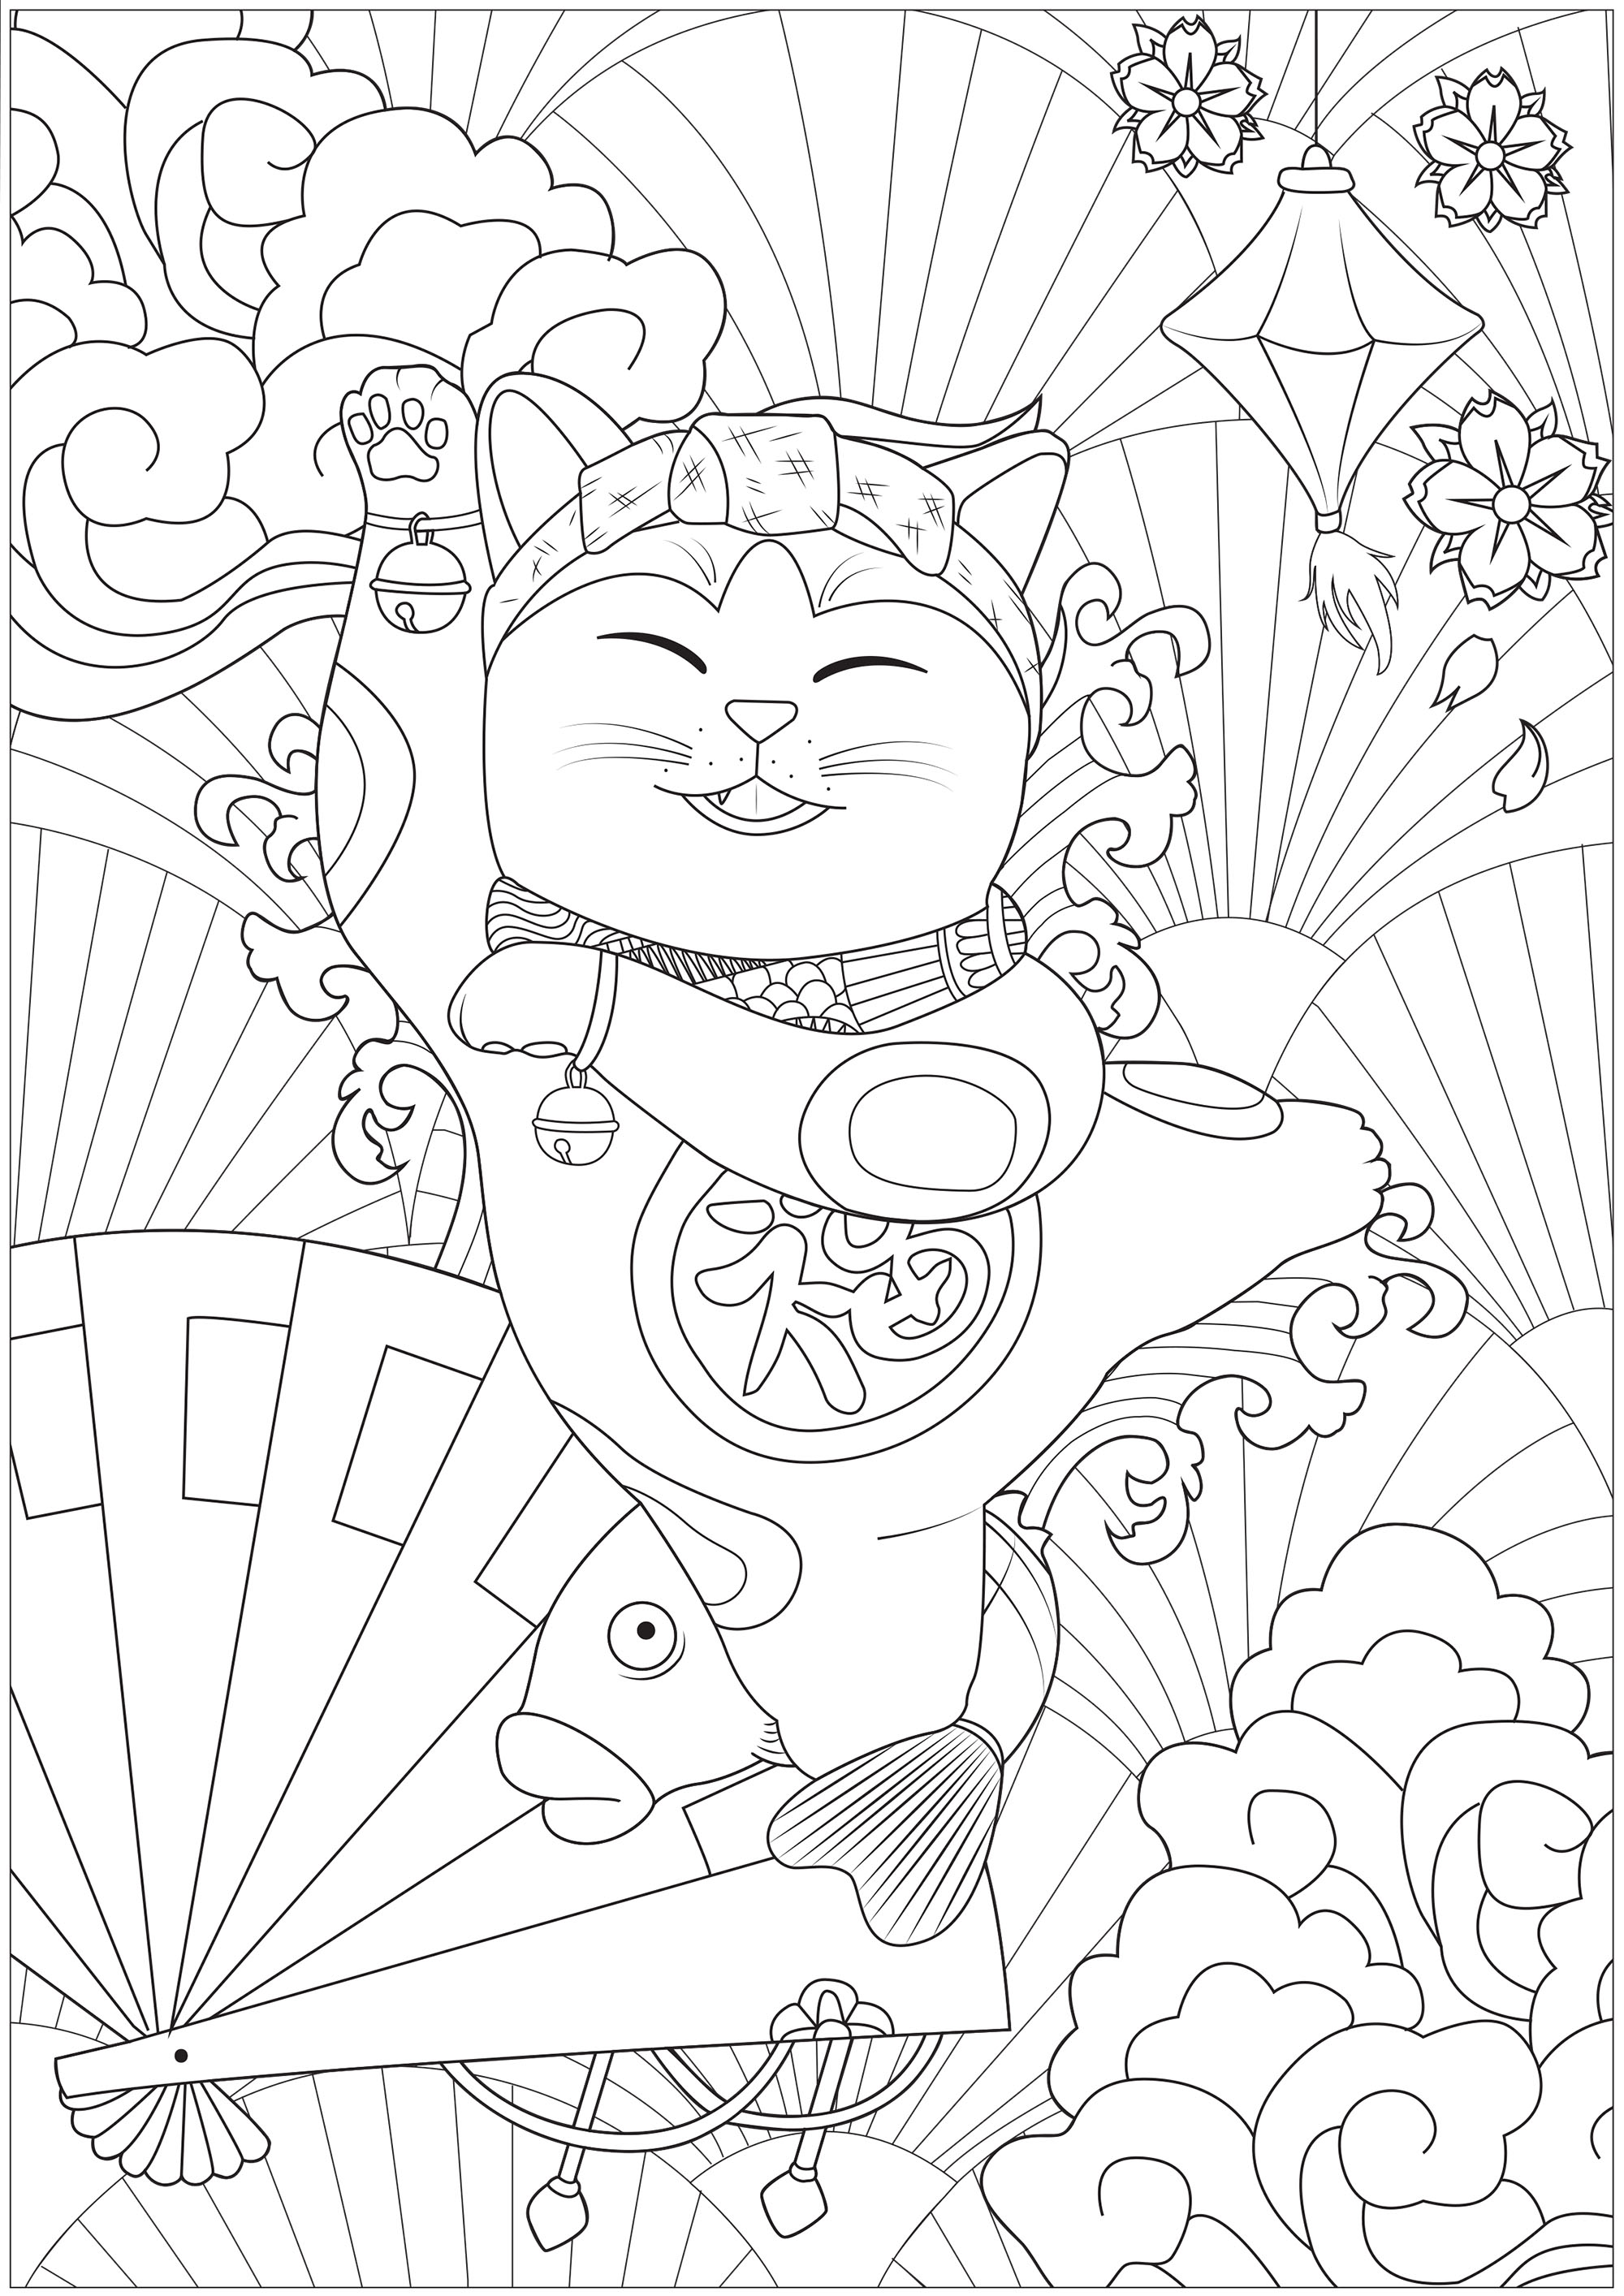 Una alegre Maneki Neko de fiesta delante de diferentes símbolos de Japón: linterna, la Gran Ola, cerezos en flor, abanicos...